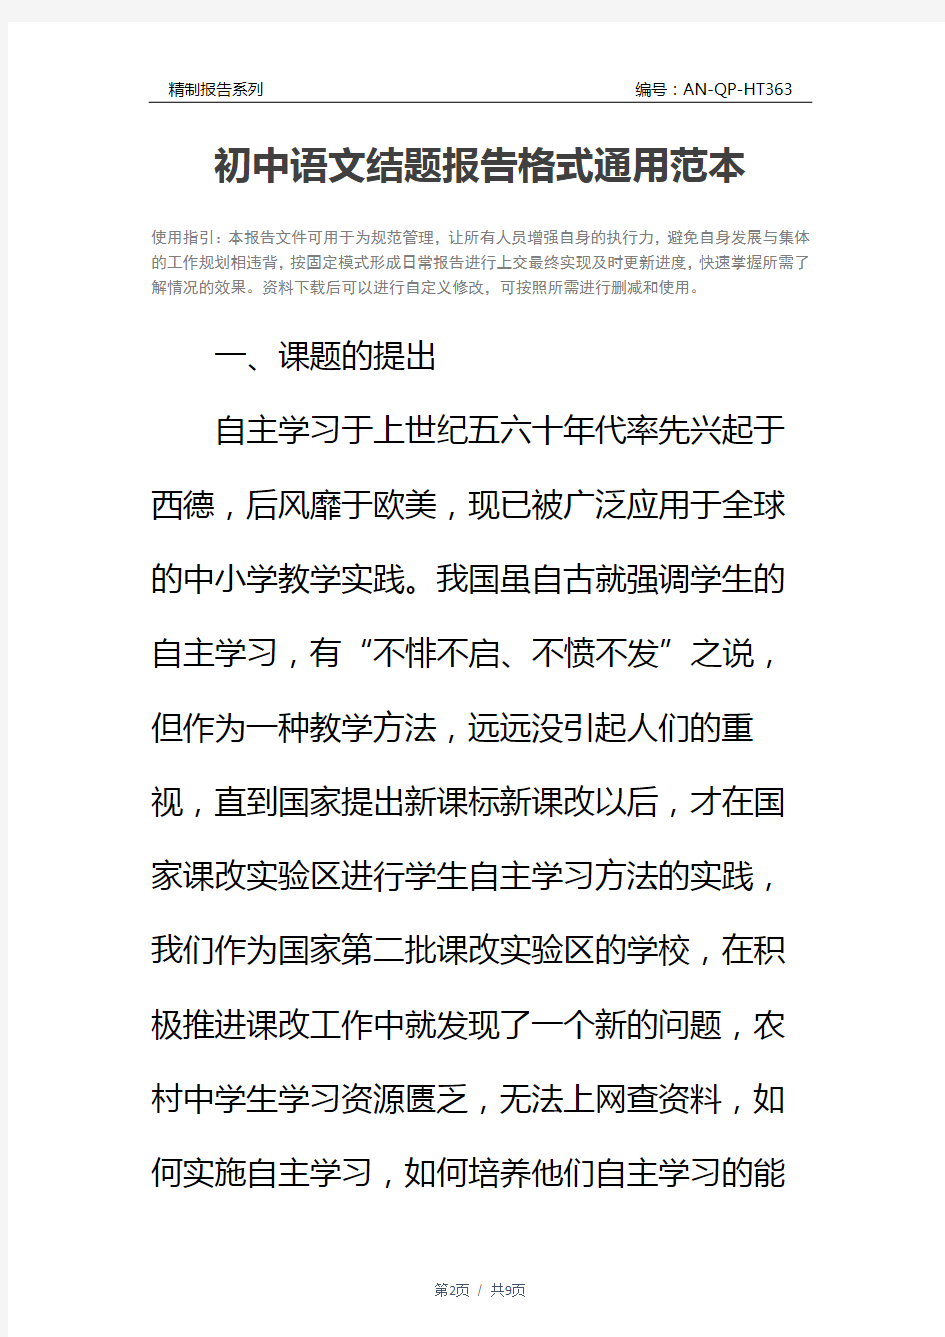 初中语文结题报告格式通用范本